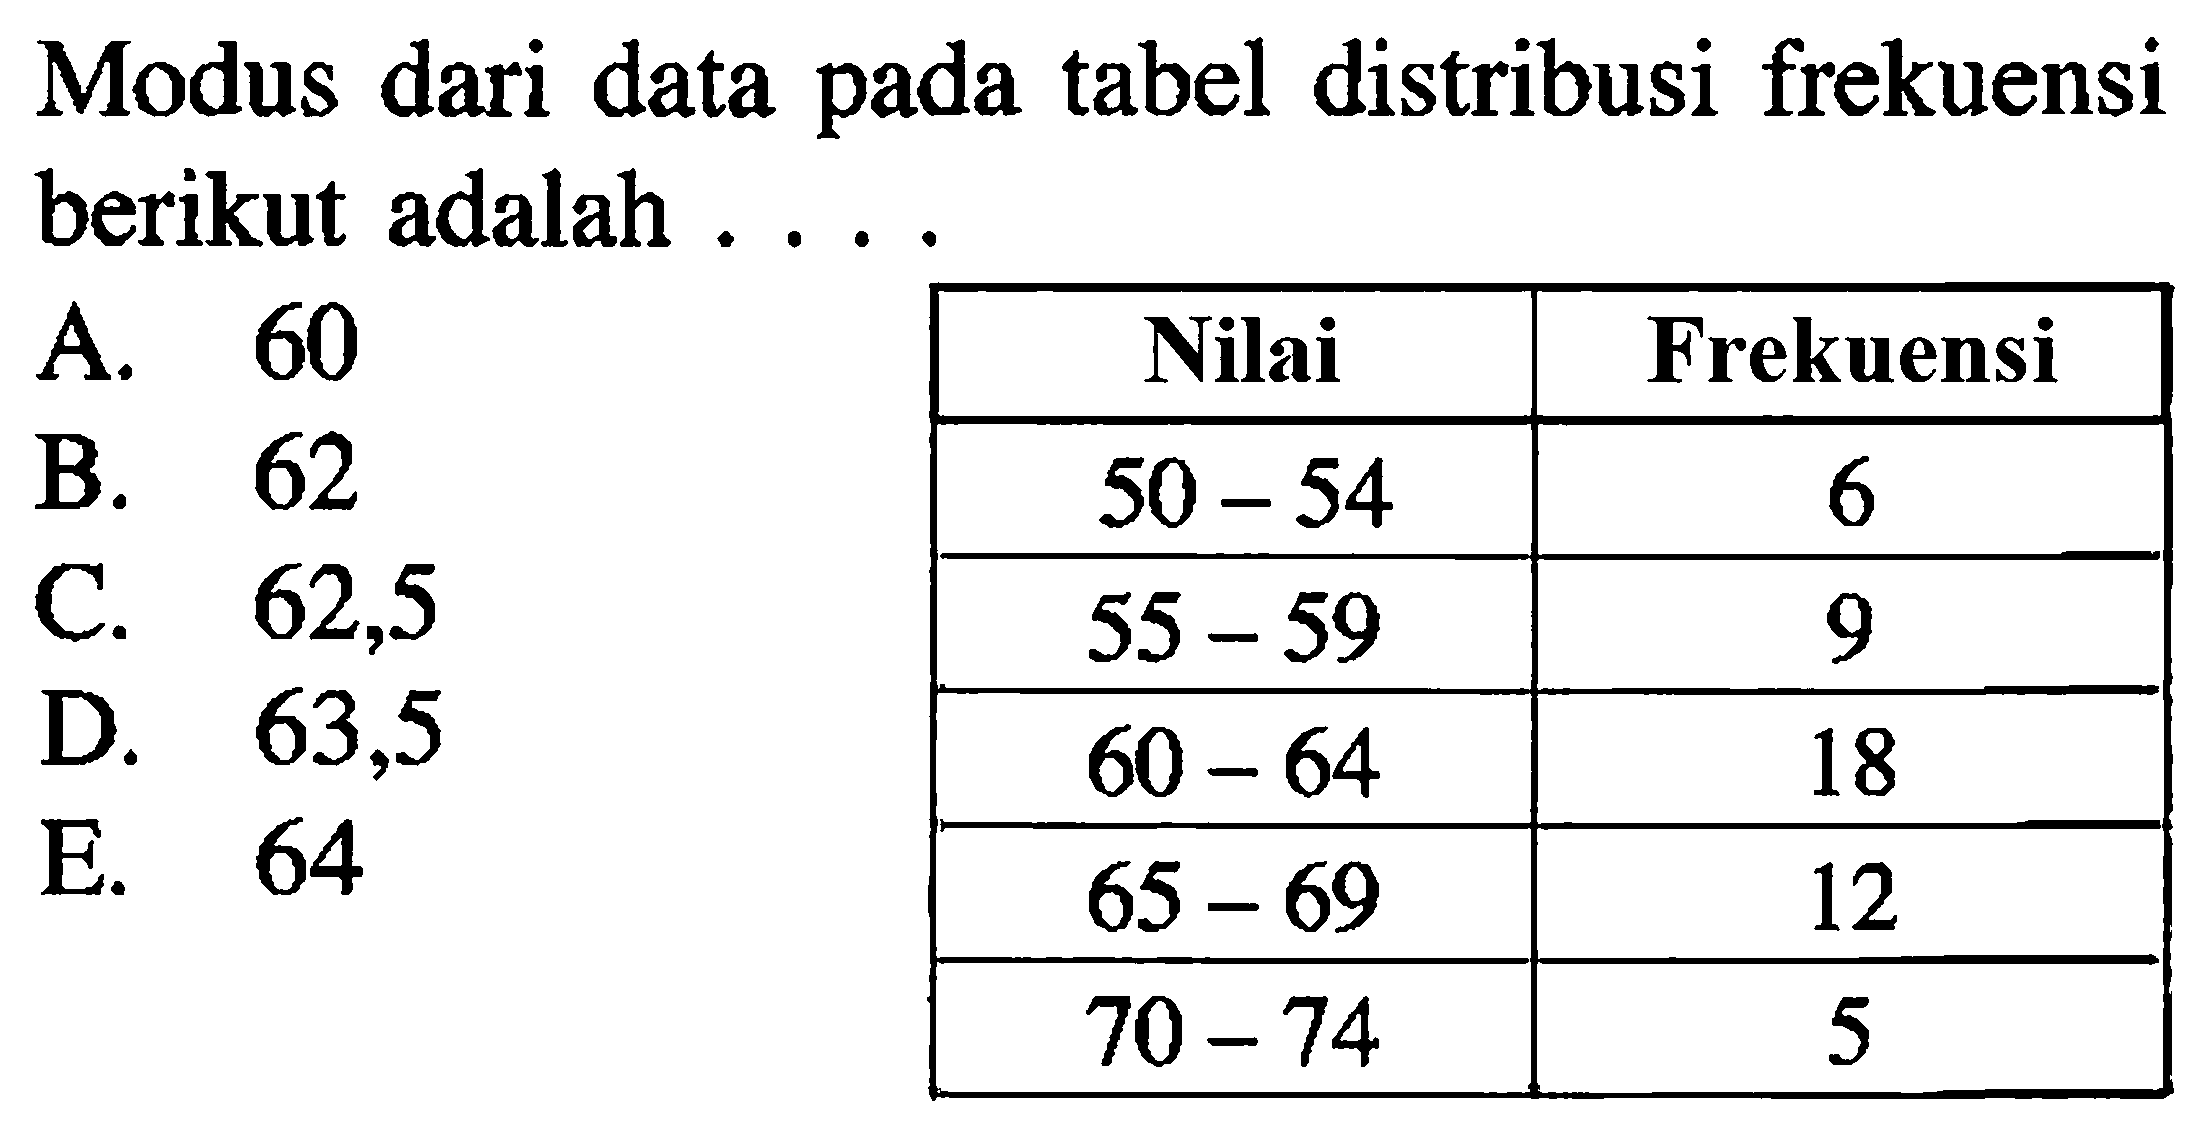 Modus dari data tabel distribusi frekuensi pada berikut adalah ...Nilai Frekuensi 50-54 6 55-59 9 60-64 18 65-69 12 70-74 5